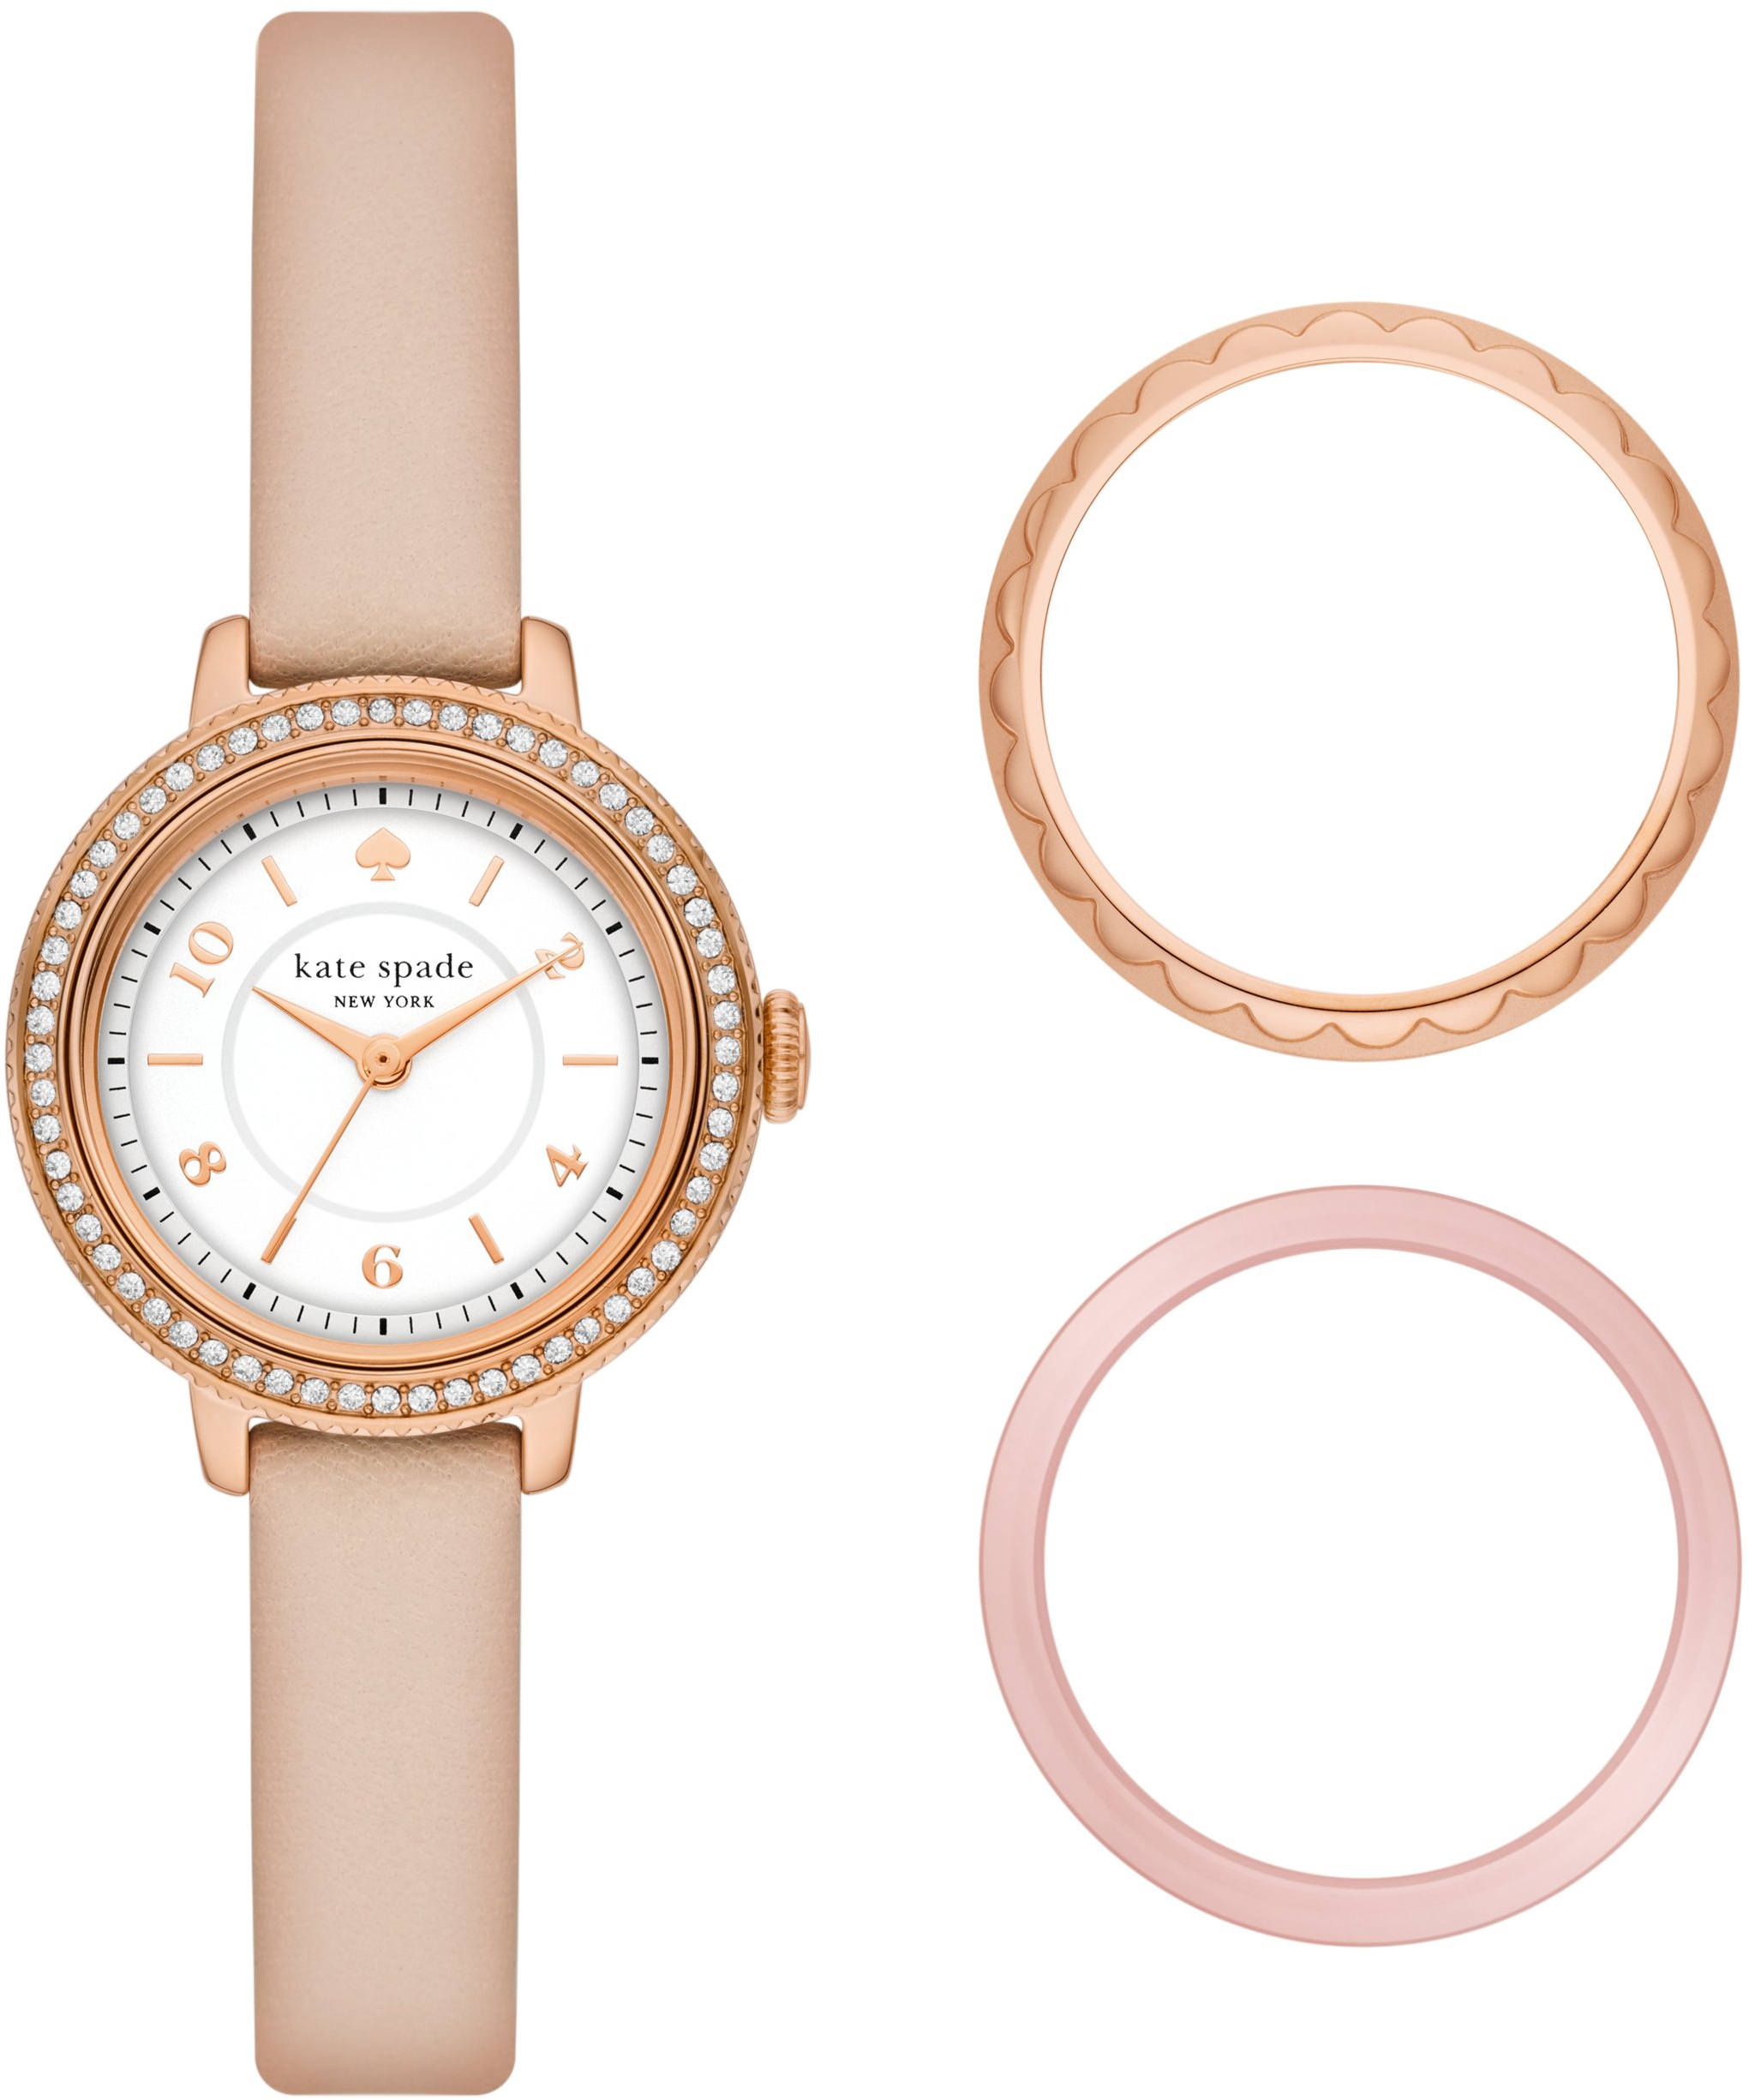 Набор розовых кожаных часов и футляра Morningside — KSW1816SET Kate Spade New York